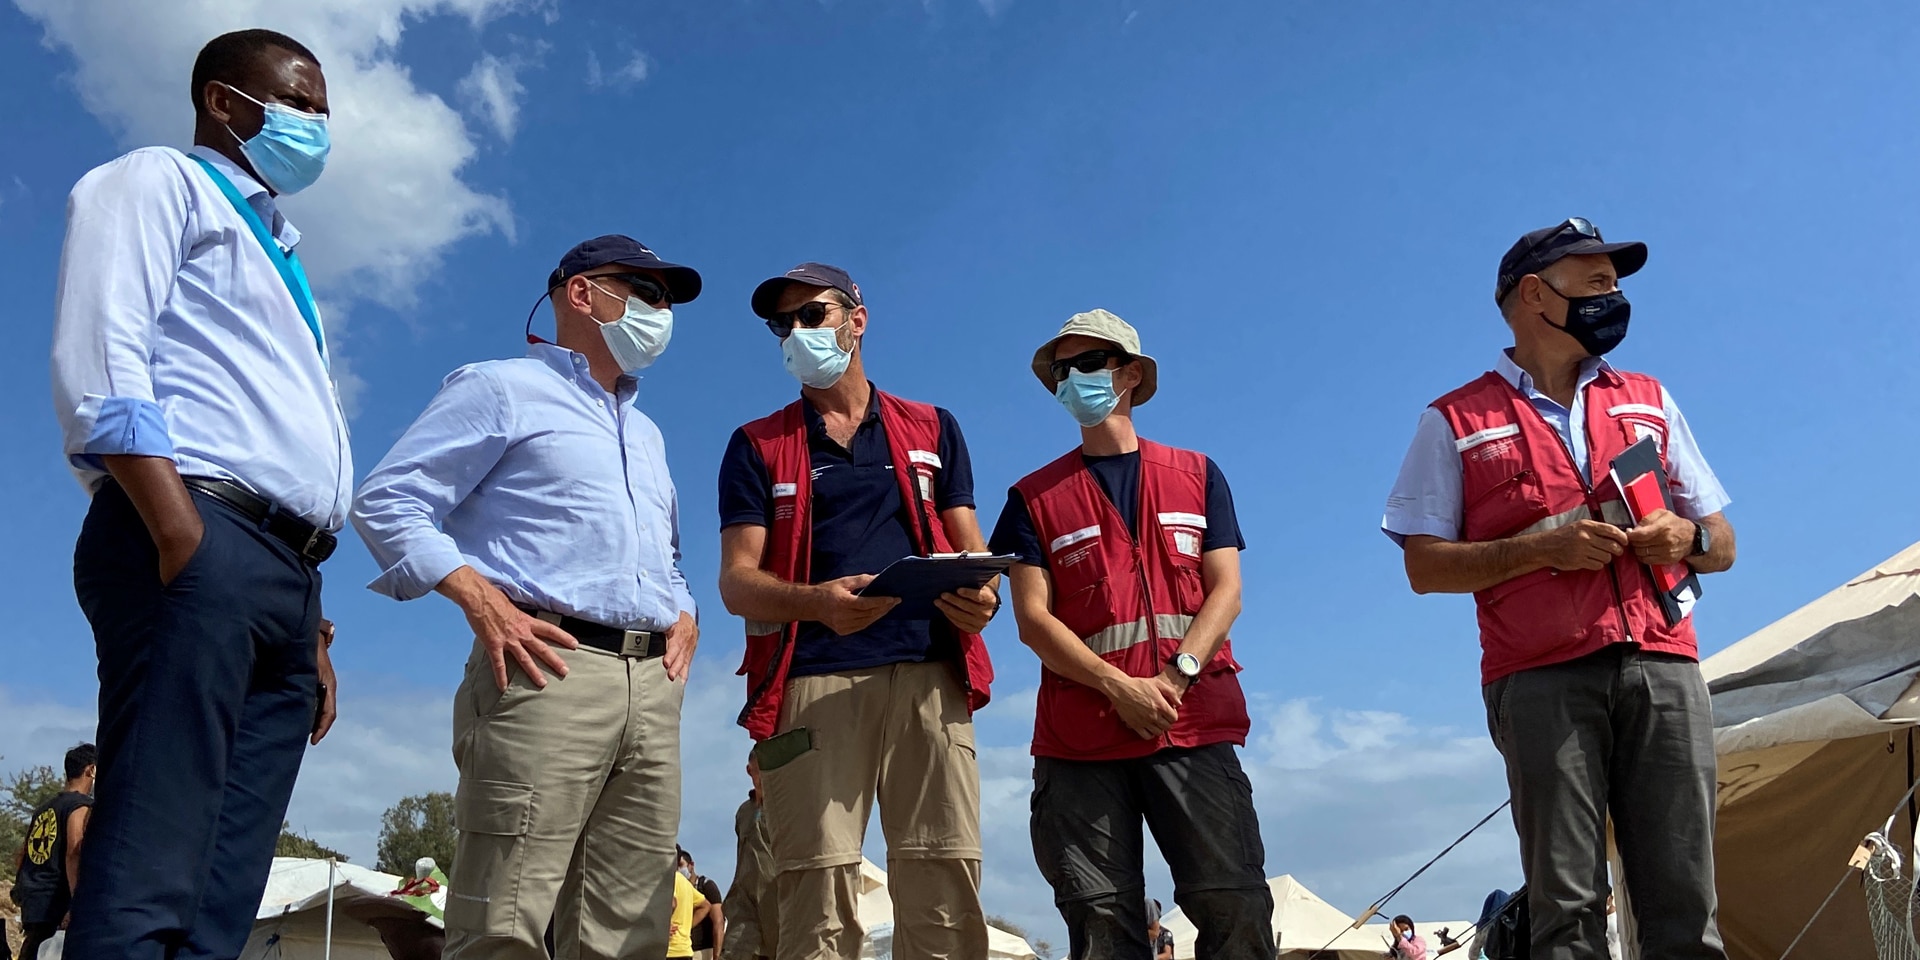 Le chef de l’aide humanitaire suisse Manuel Bessler s’entretient avec des membres du Corps suisse d’aide humanitaire et Spiros Habimama directeur général adjoint du camp de Lesbos lors d’une visite sur le terrain.